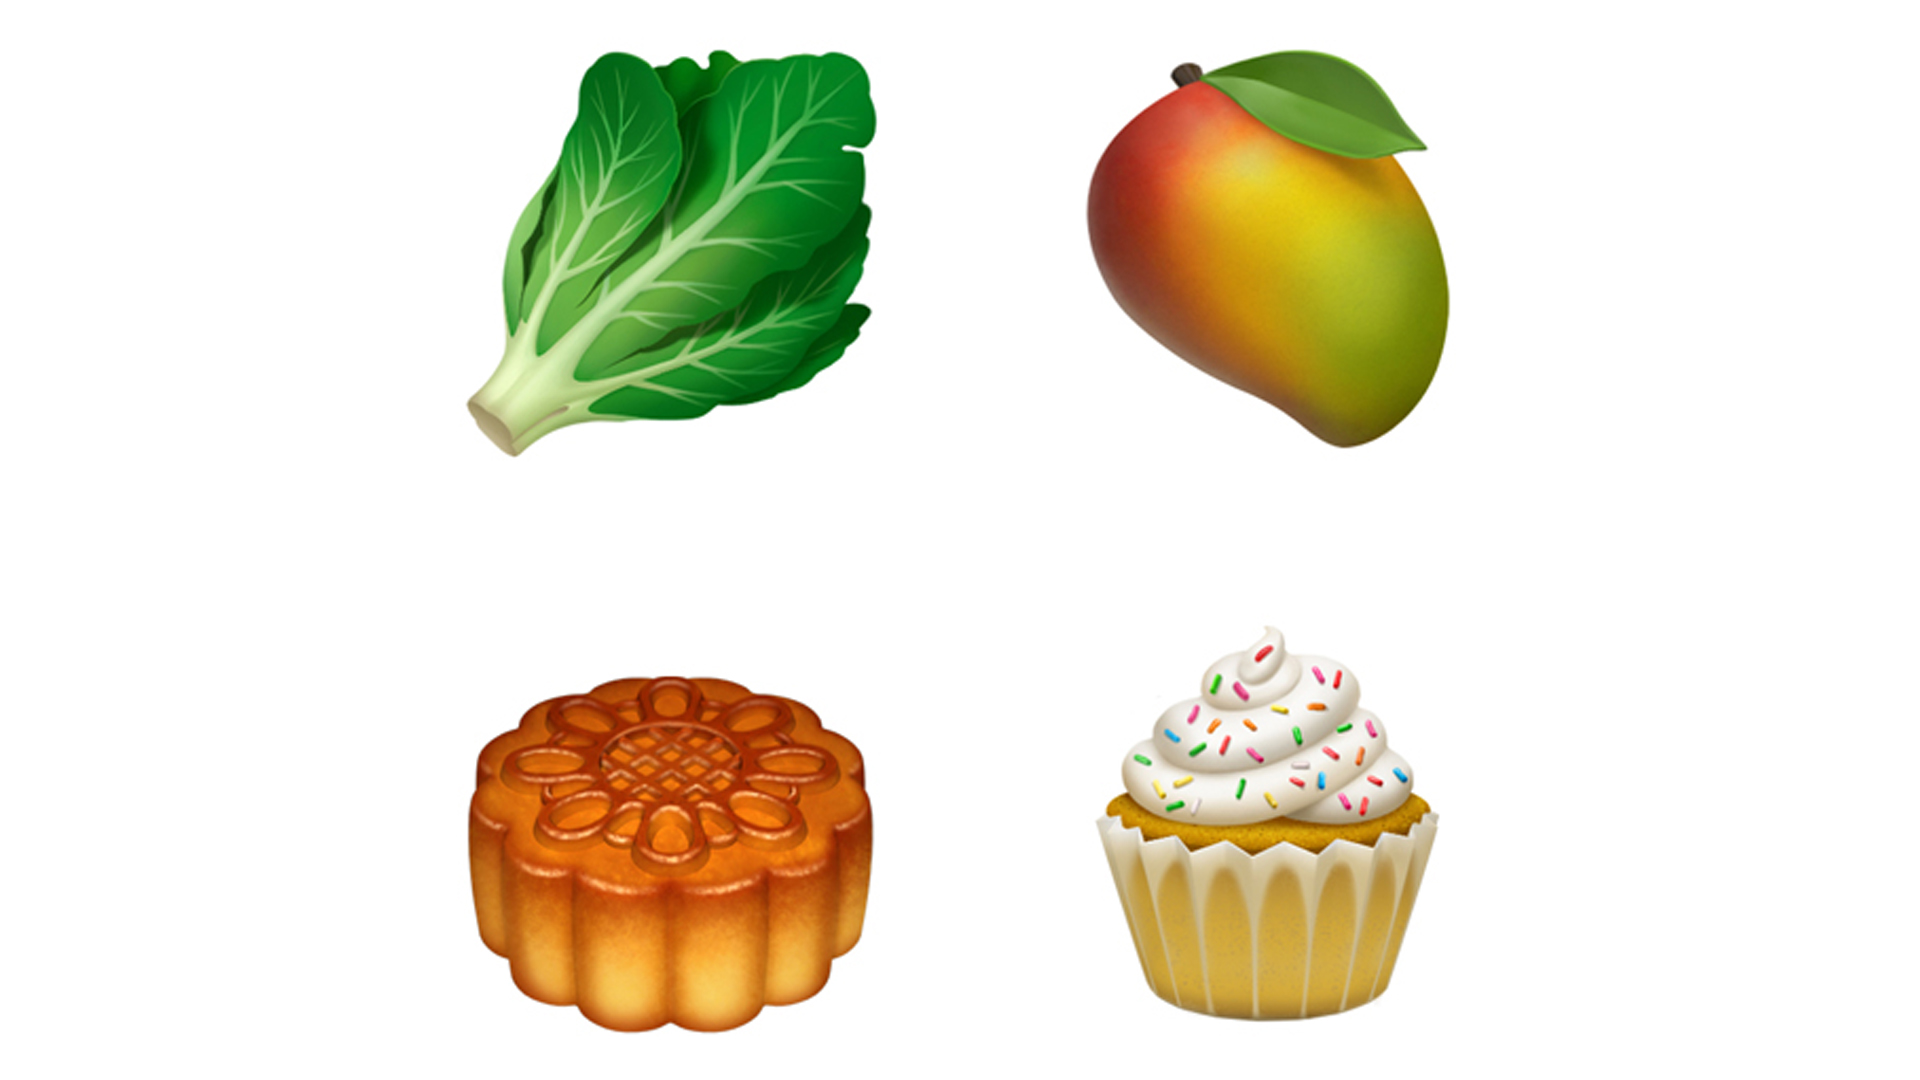 Food emojis